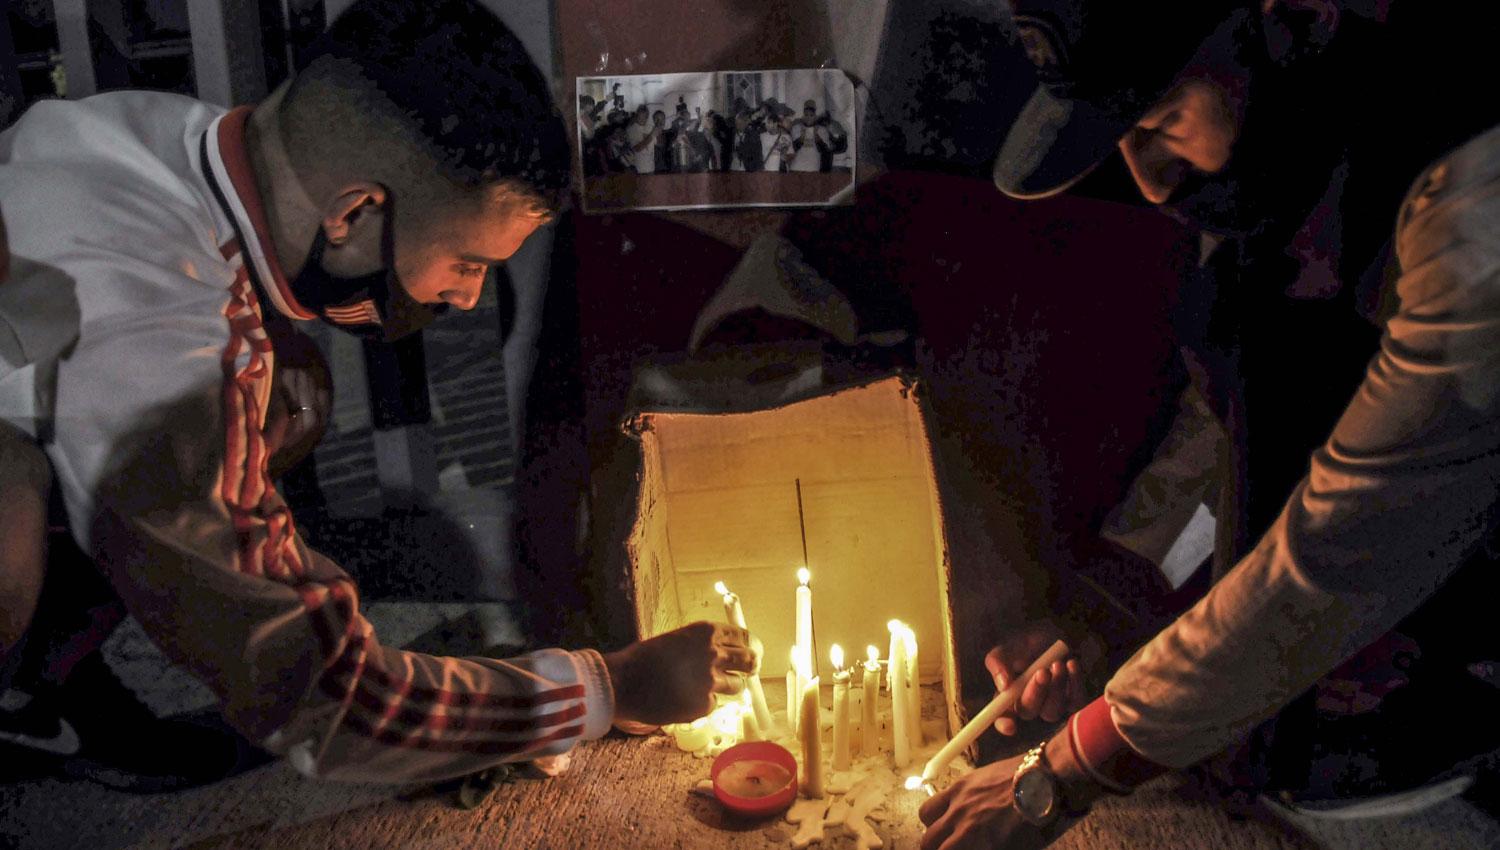 LO LLORA EL PINCHA. Hinchas de Estudiantes de La Plata encienden velas por Sabella.